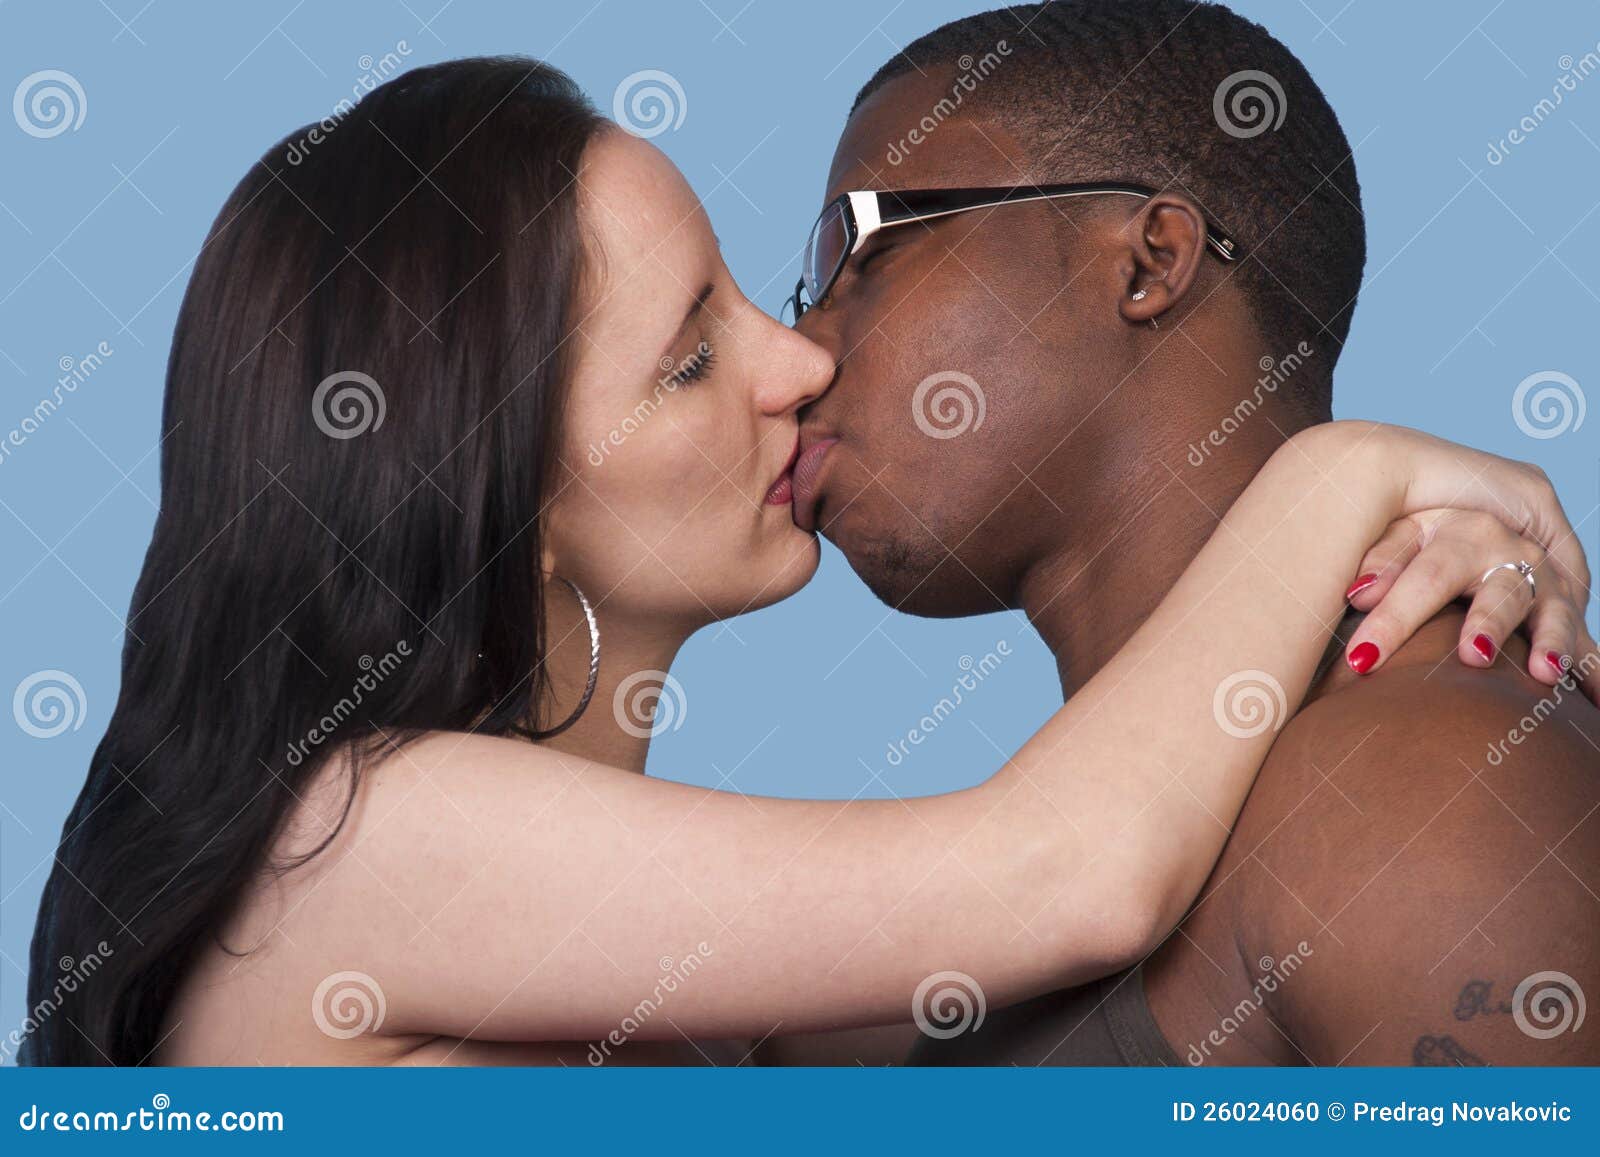 White Guy Kissing Black Girl image photo photo